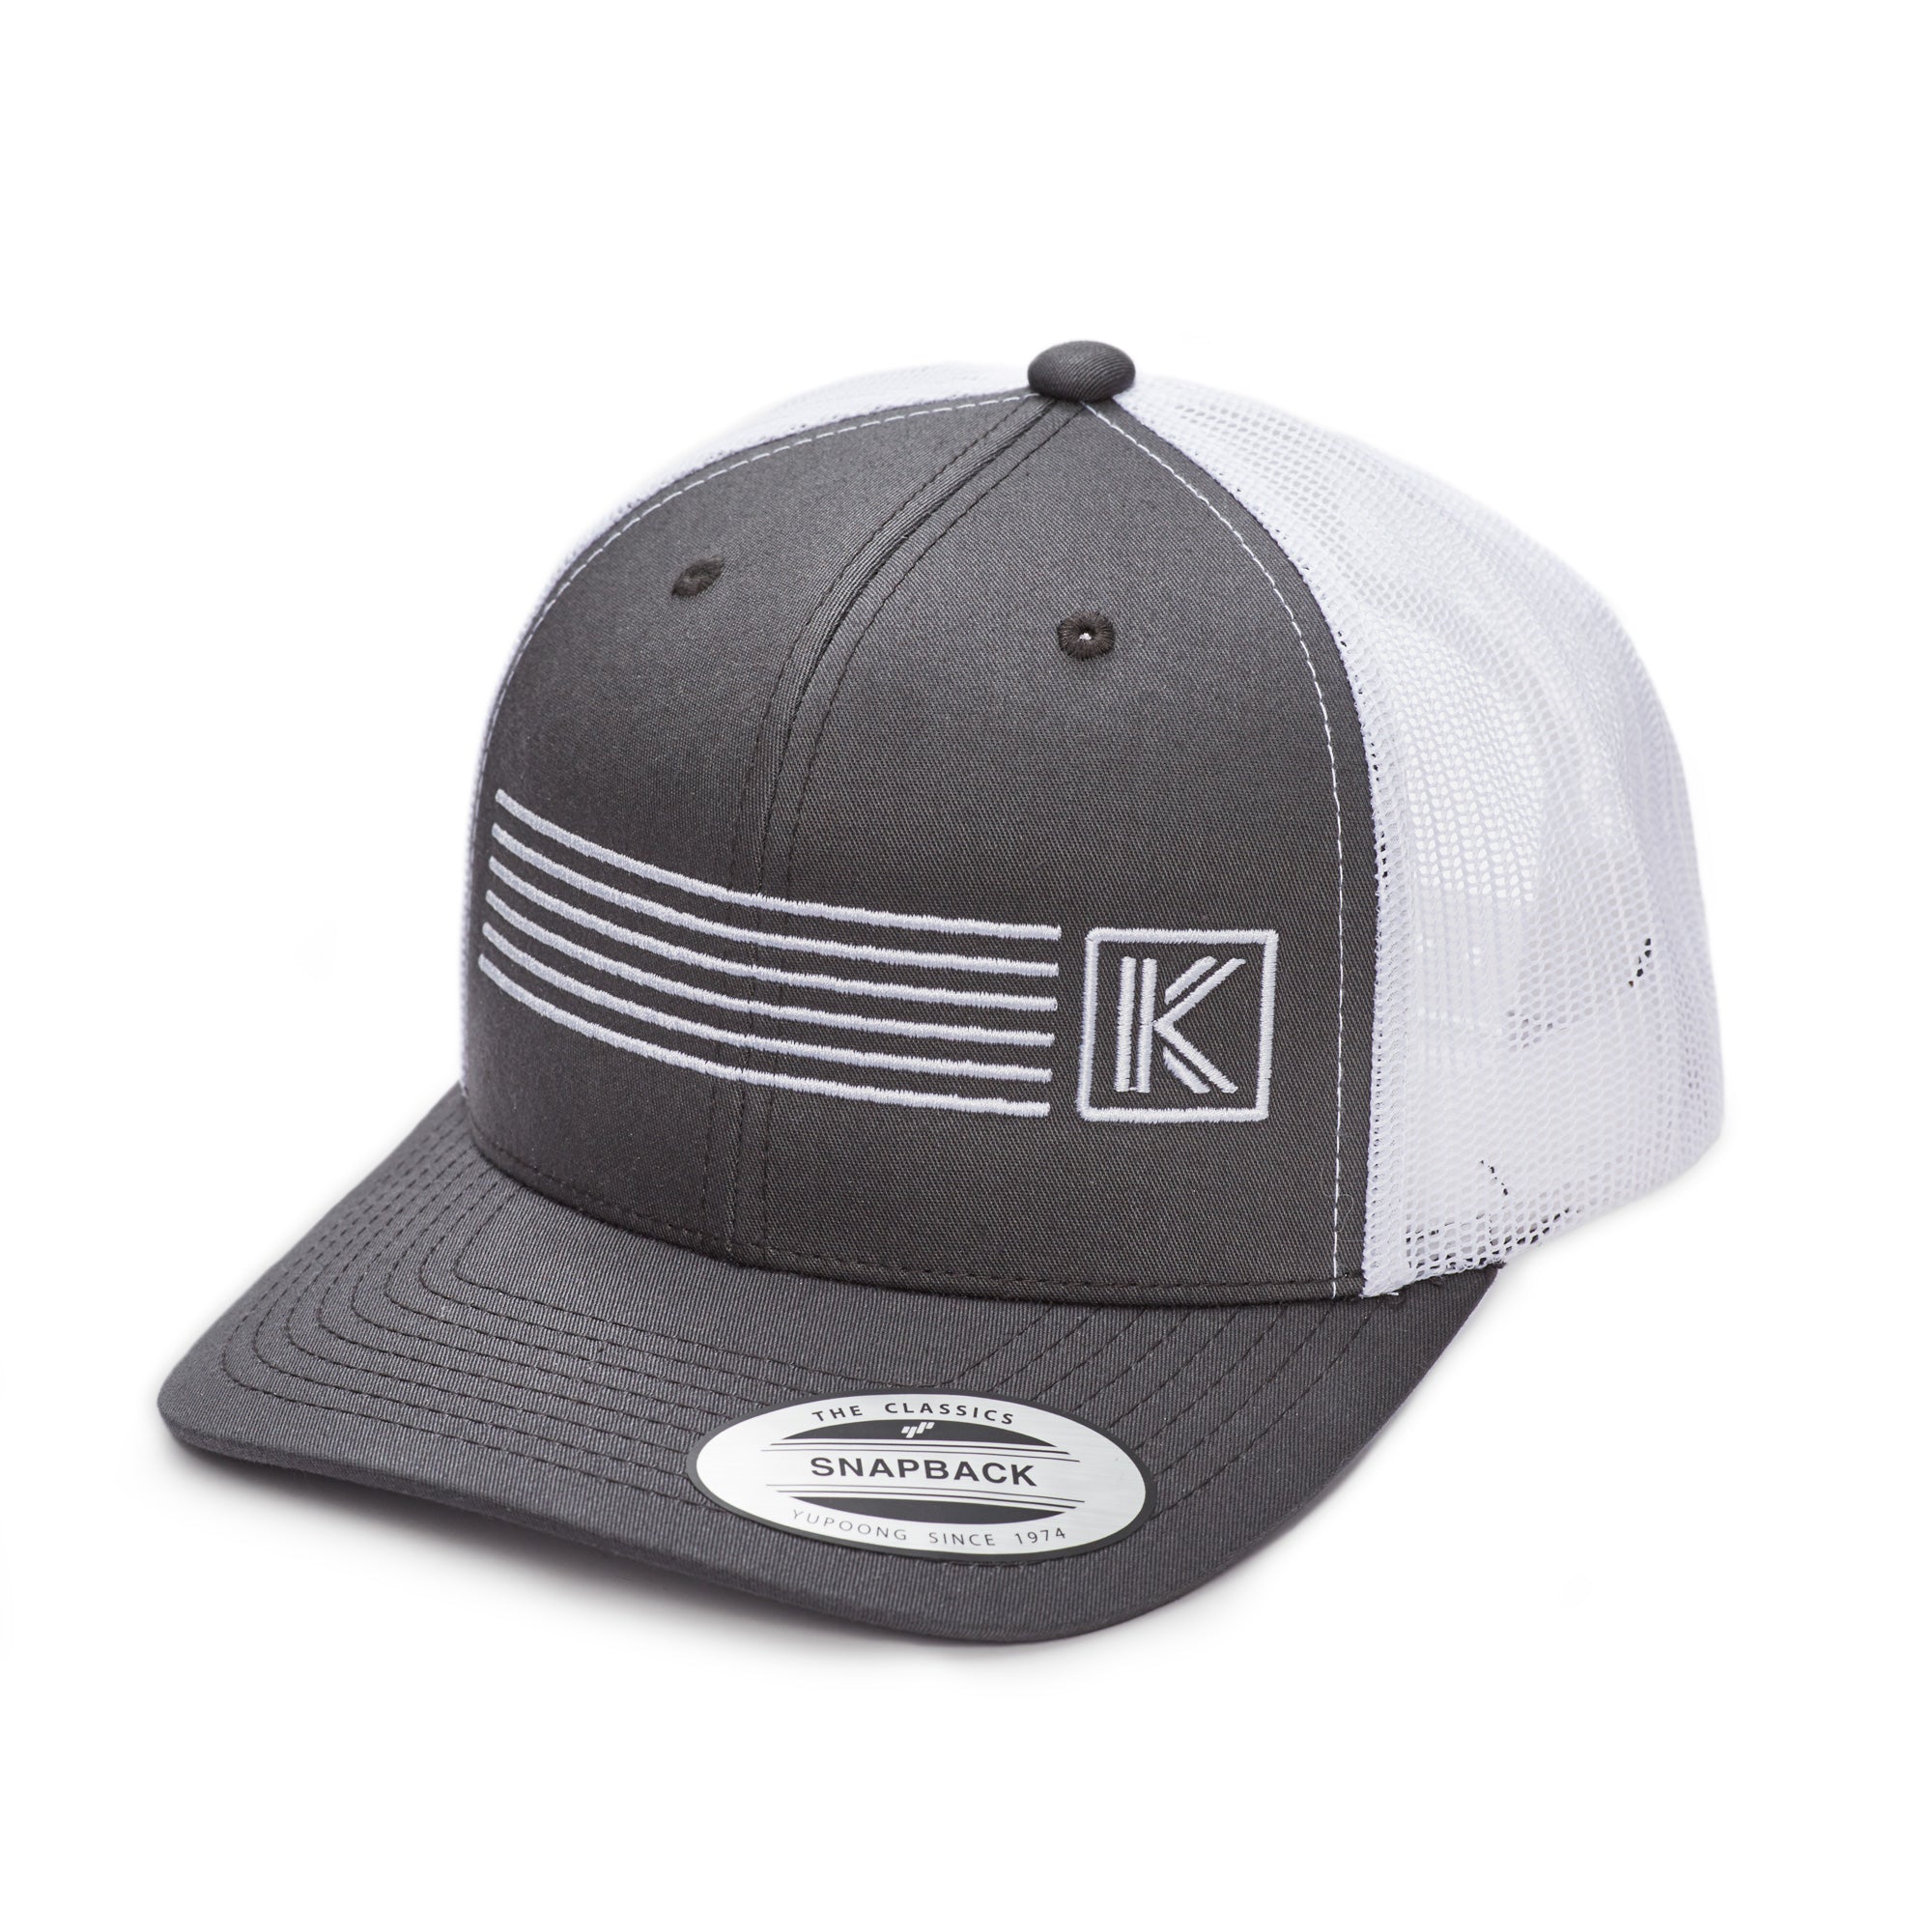 KK Studios Mesh Trucker Hat- Grey/White